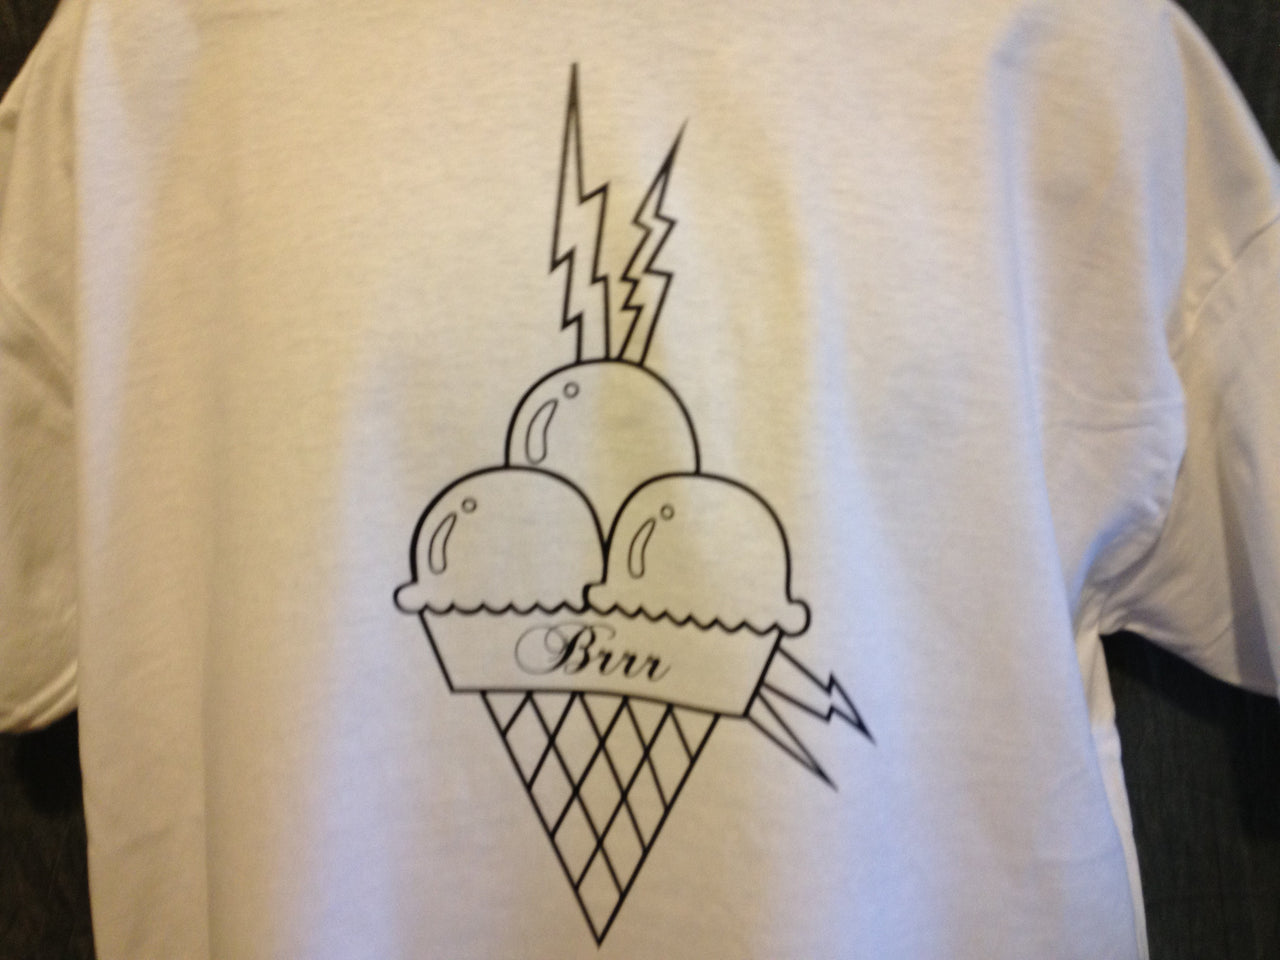 'Gucci Mane' Brrr Ice Cream Cone Tshirt - TshirtNow.net - 4